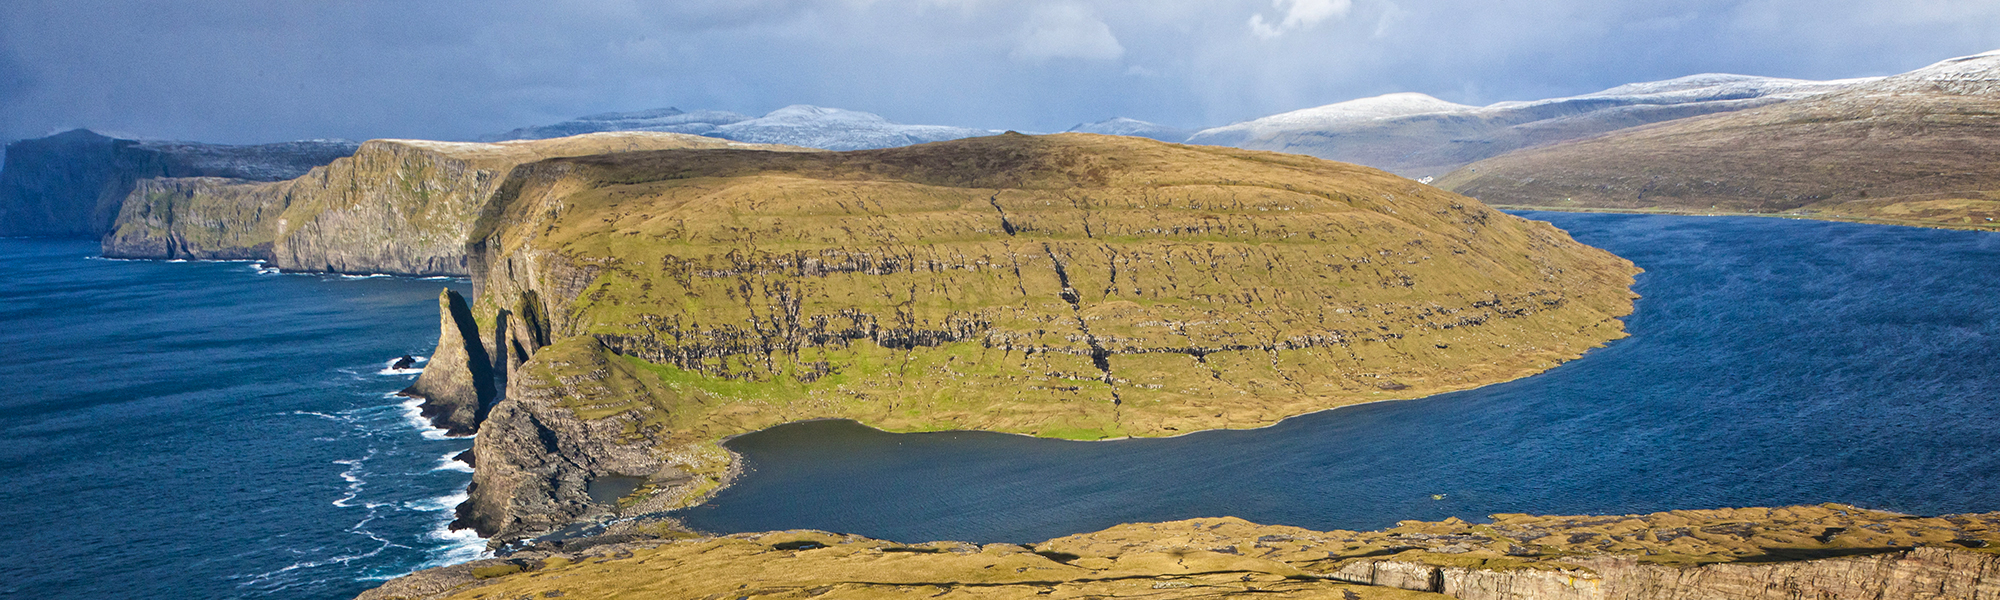 Découverte Iles Féroé © Morten Abrahamsen / Visit Faroe Islands